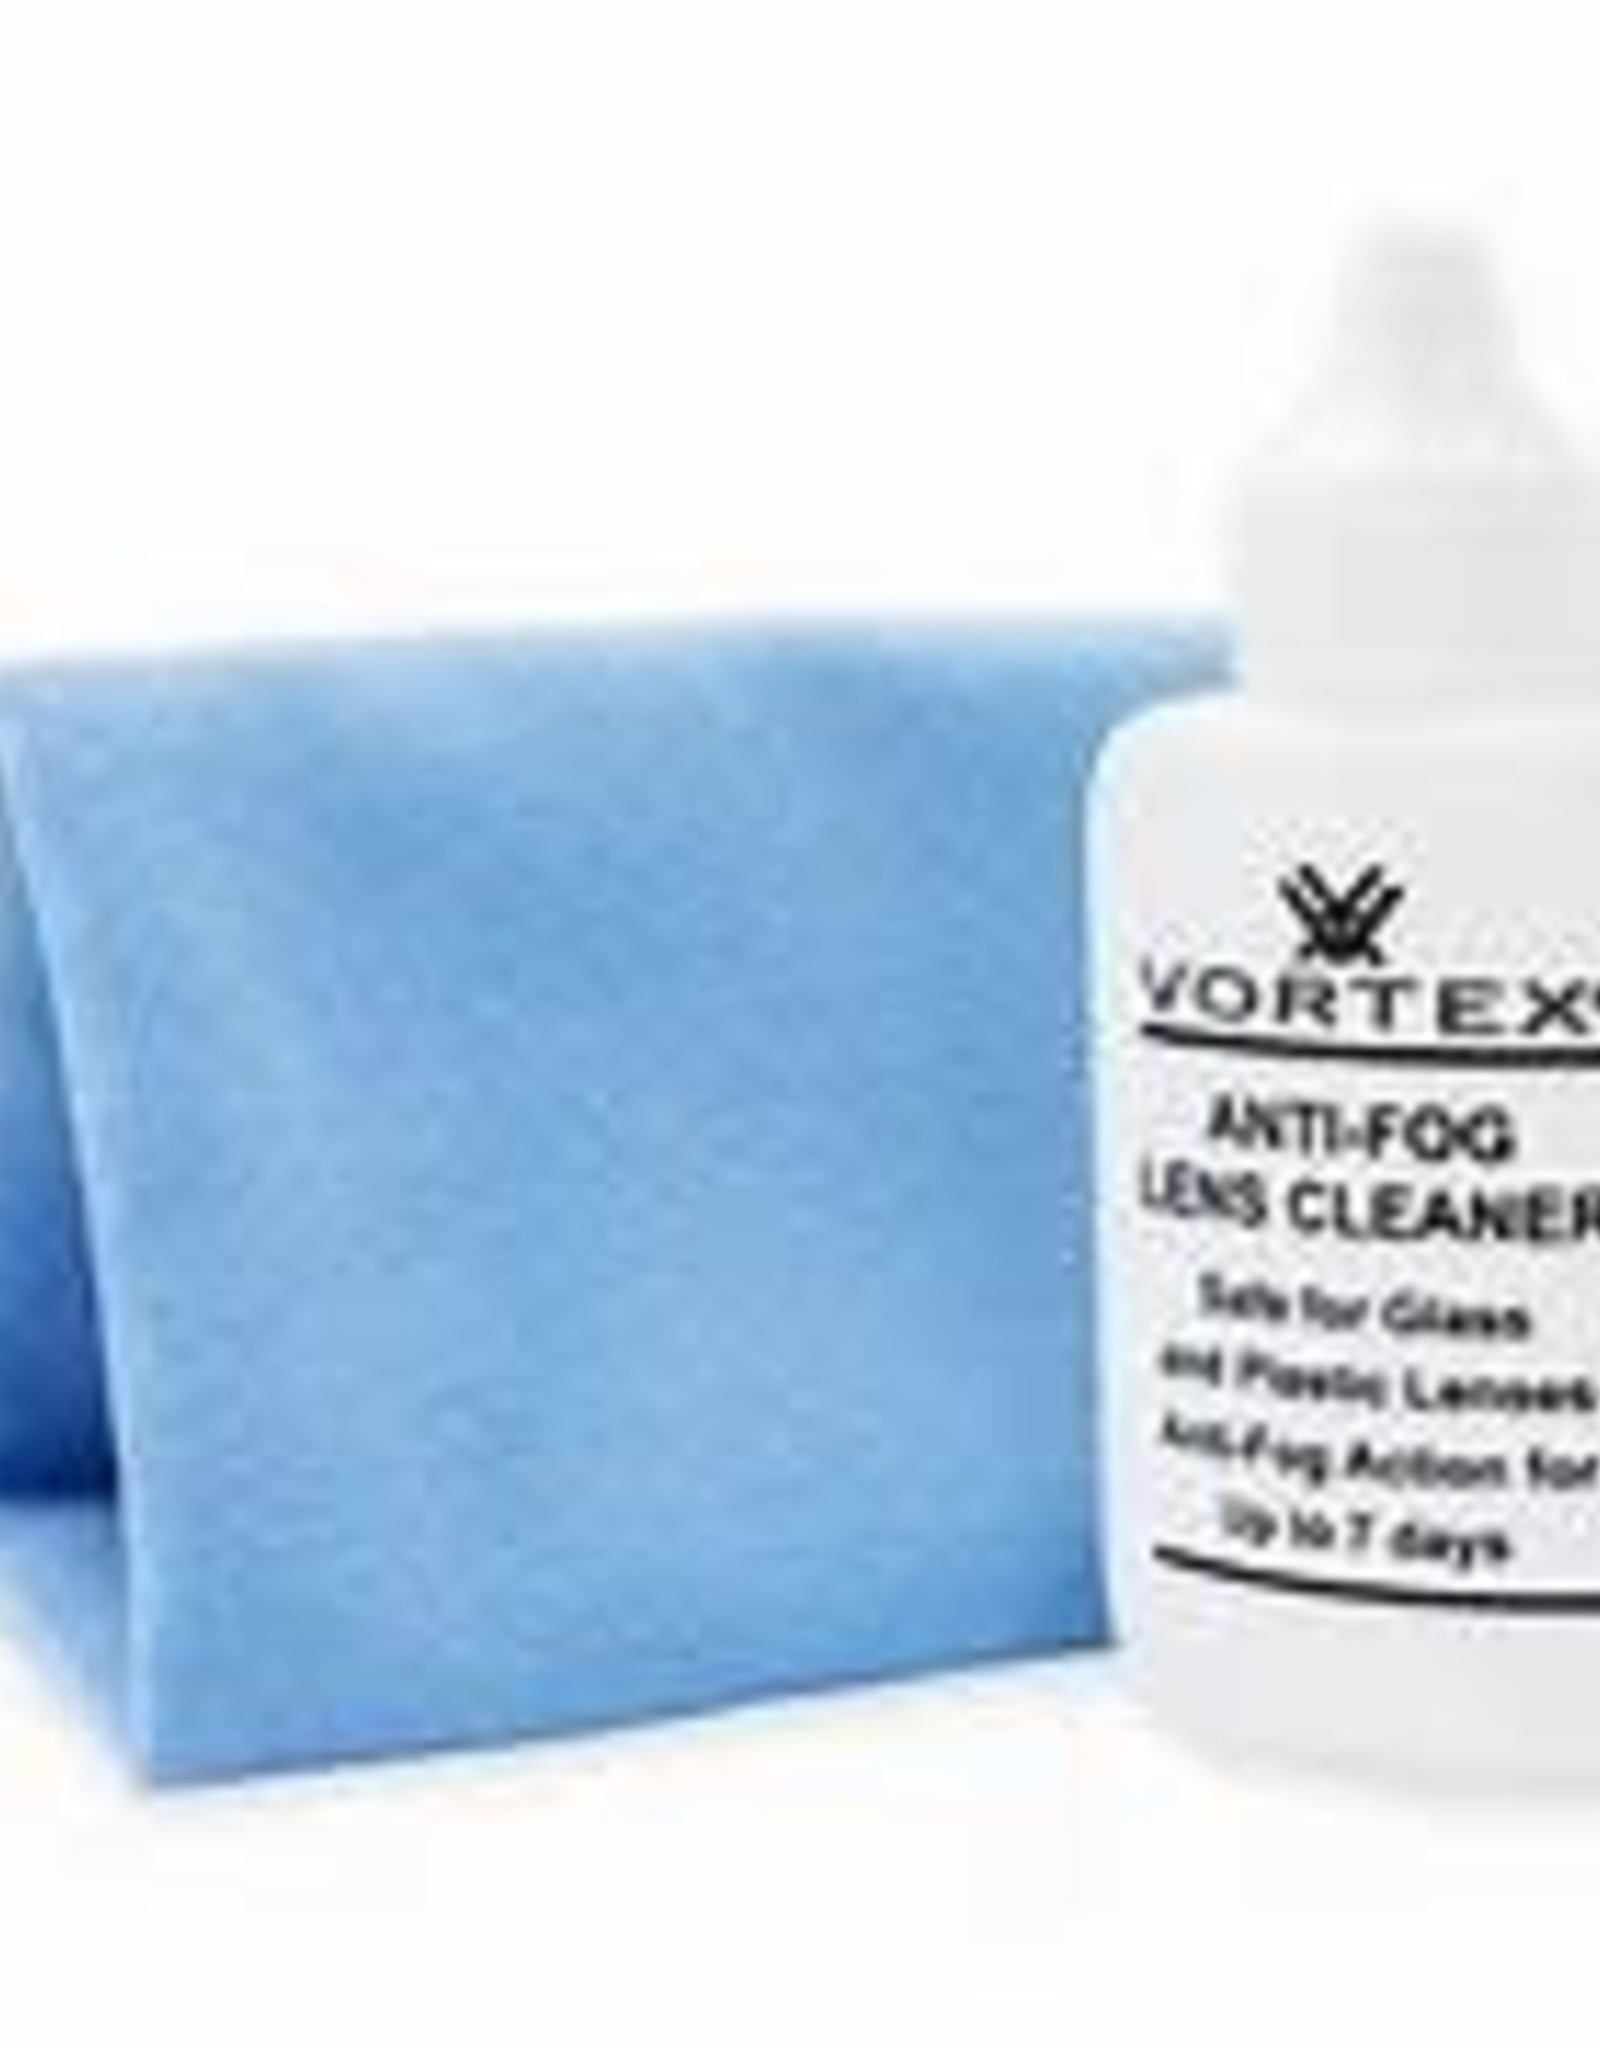 Vortex Anti-Fog Lens Cleaner